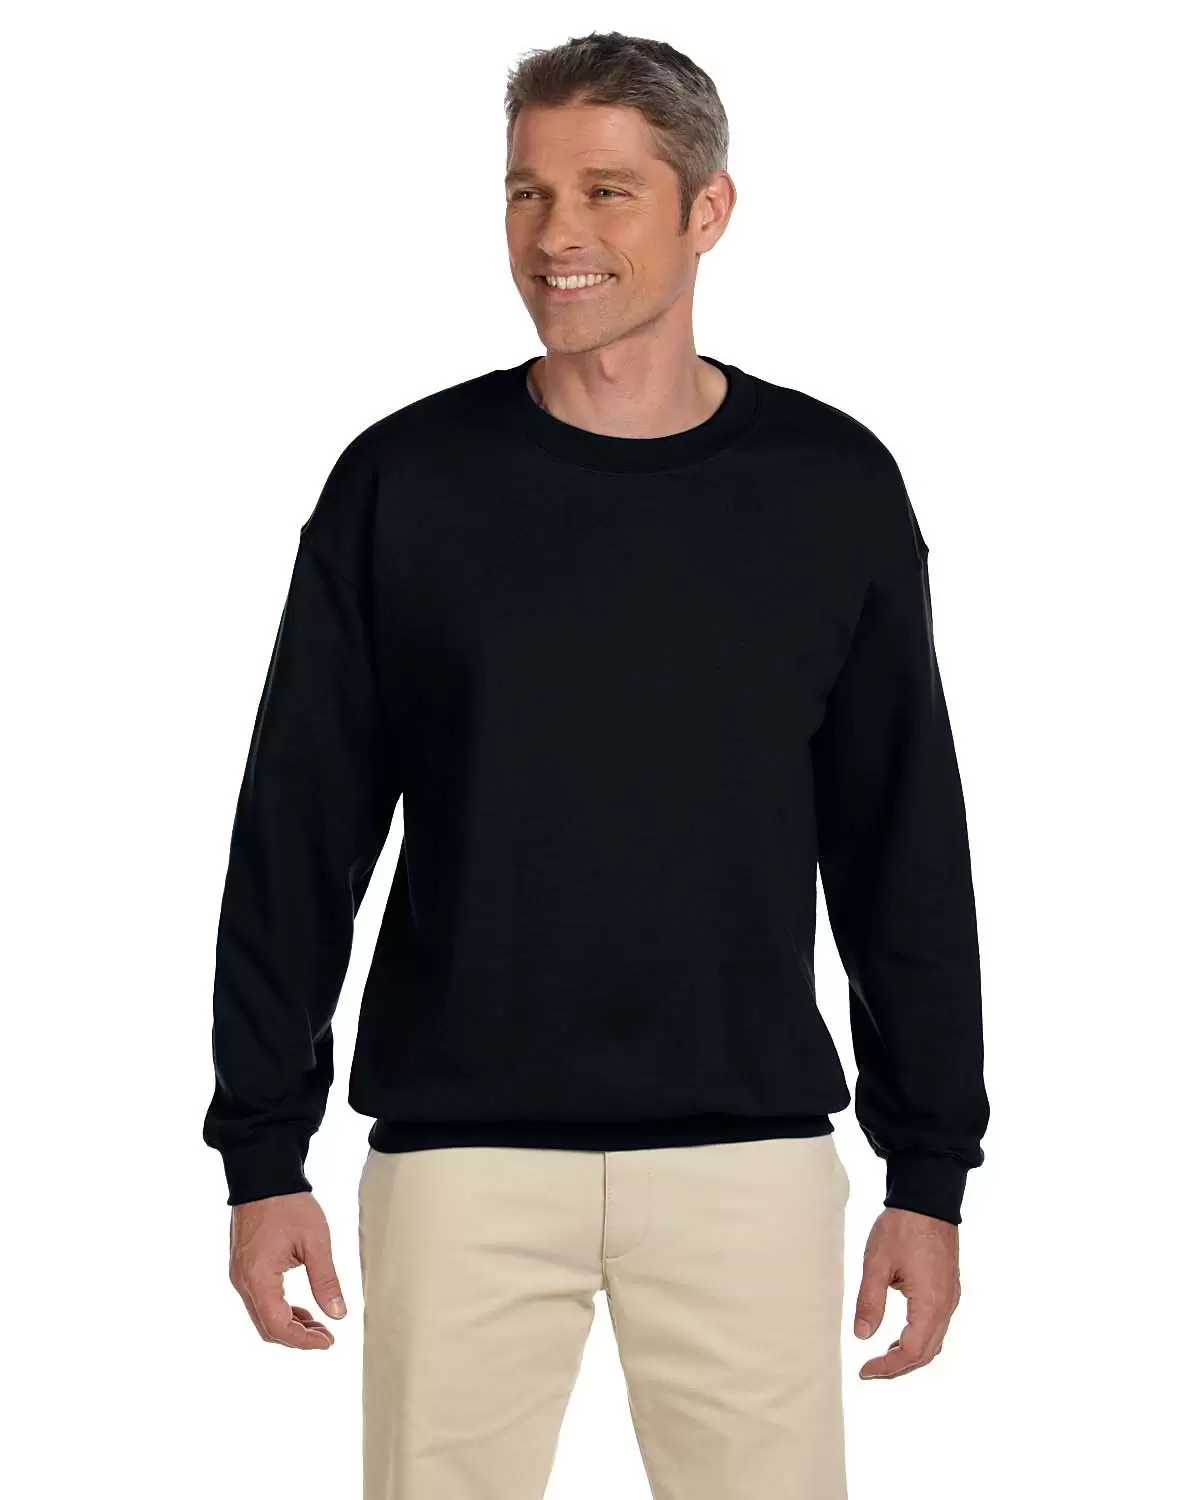 Gildan 18000/G180 Crew Neck Sweatshirt (Wholesale) - From $7.36